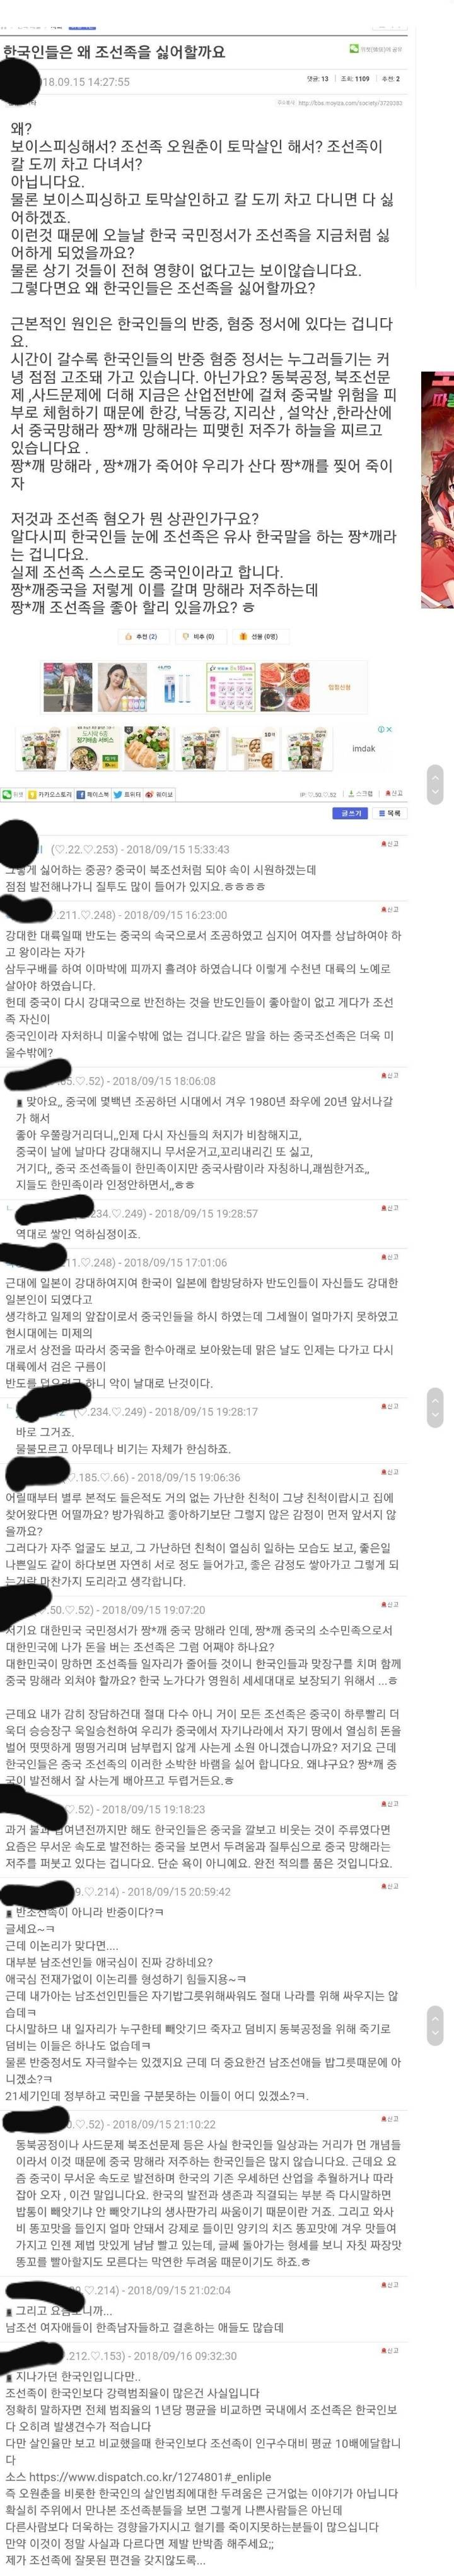 조선족 : 한국인들은 왜 조선족들을 싫어할까?...jpg | 인스티즈